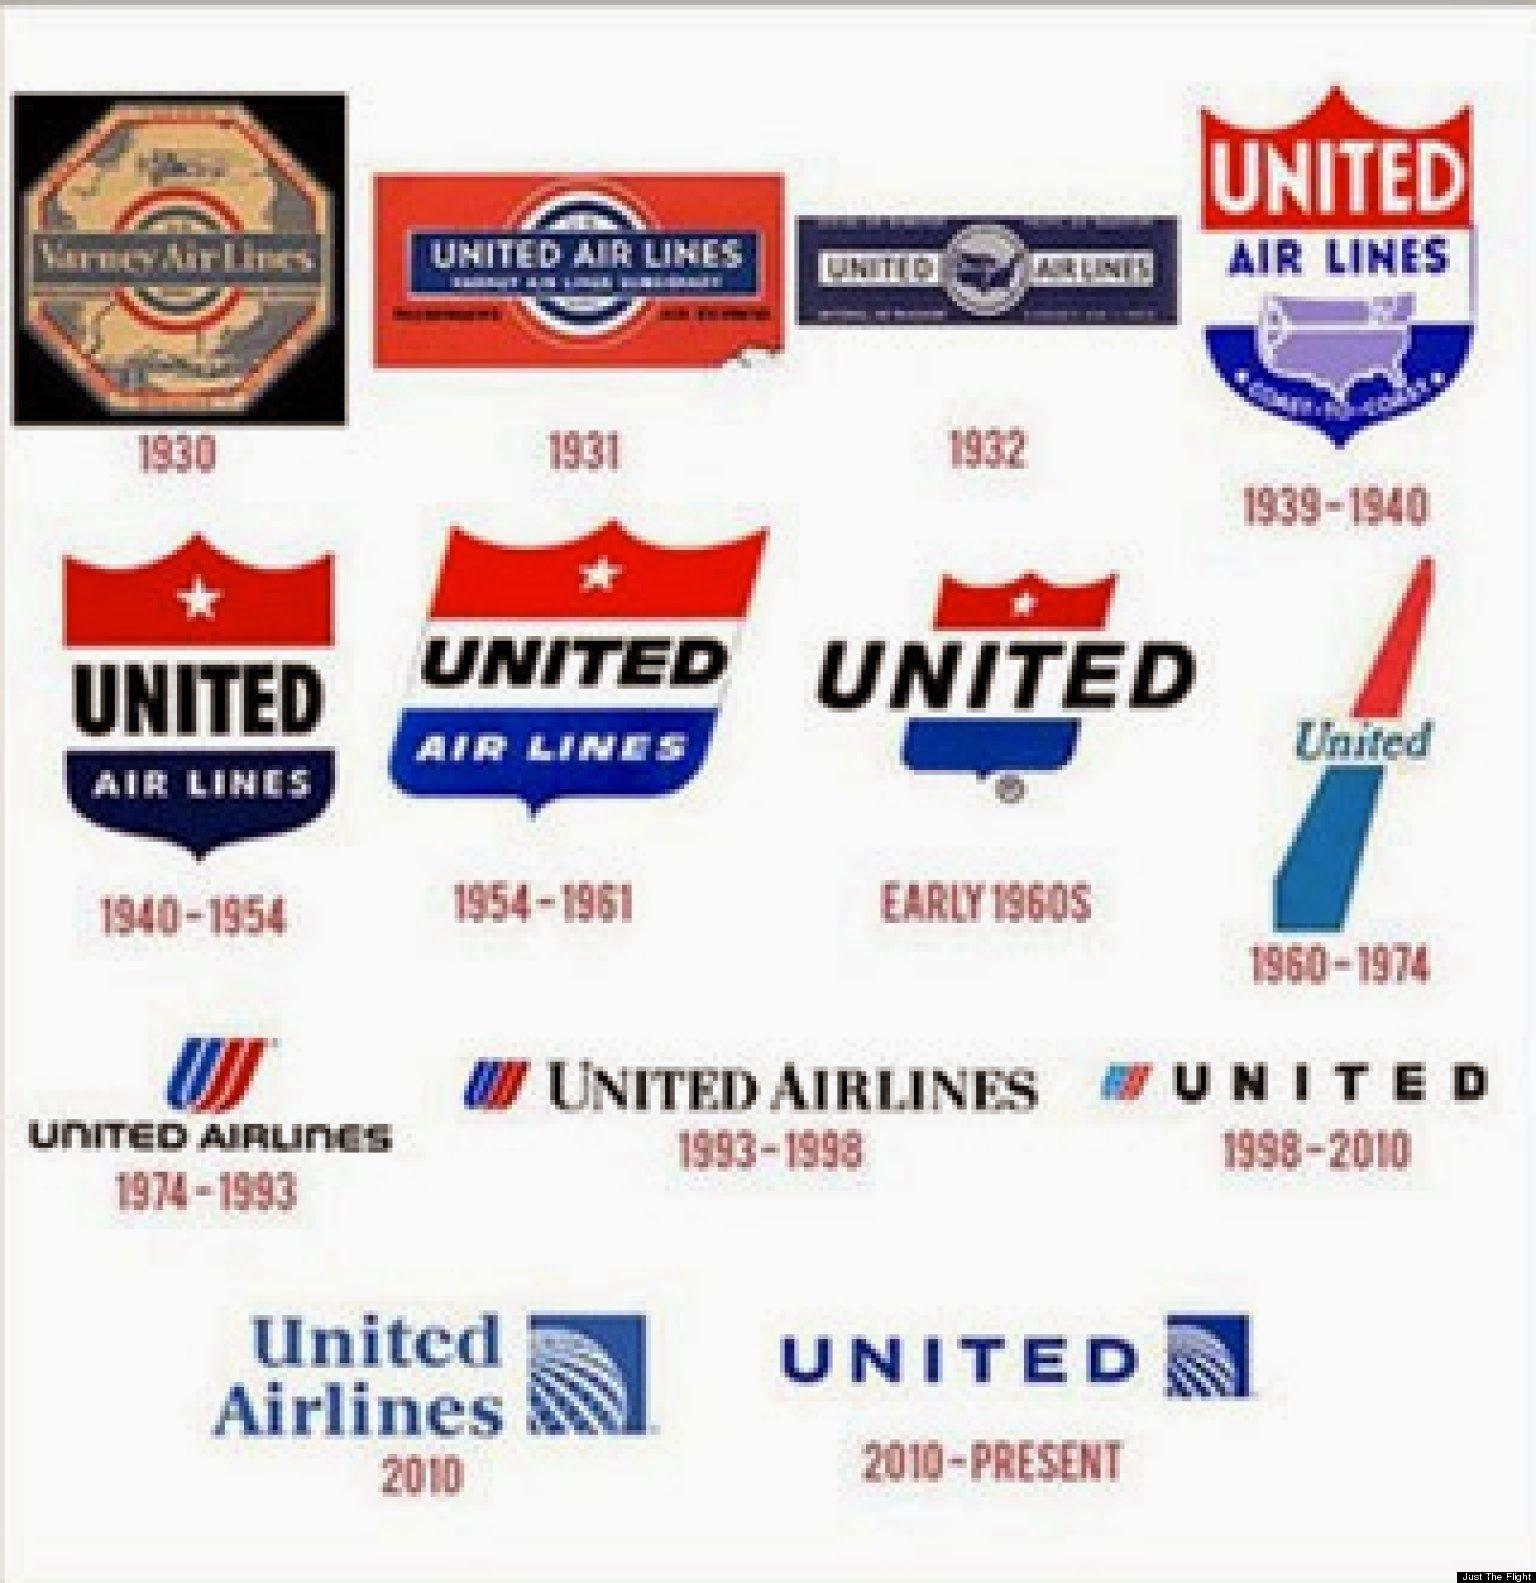 Airline Company Logo - Airline Company Logos | Airlines | Pinterest | Airline logo, United ...